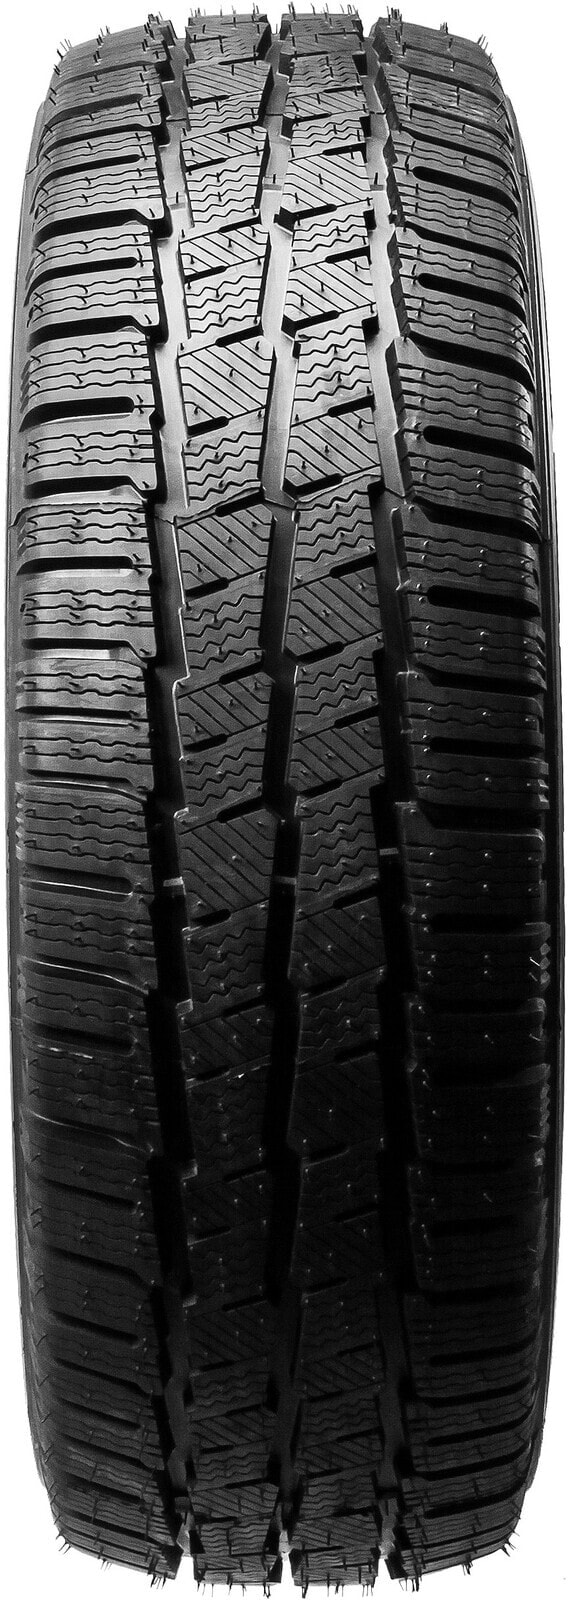 Шины для легких грузовых автомобилей зимние Michelin Agilis Alpin 3PMSF M+S DOT21 195/60 R16 99/97T